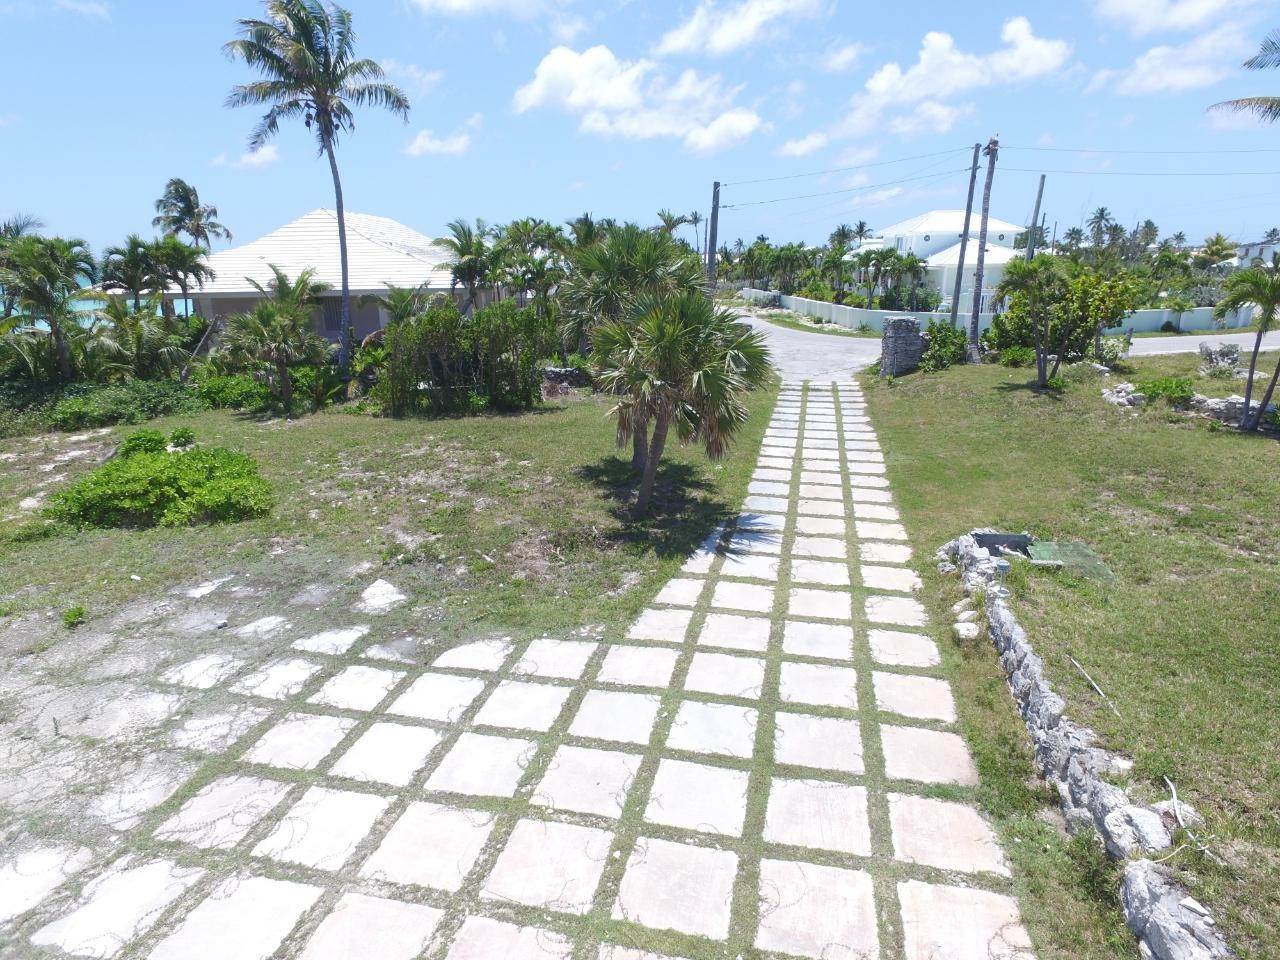 13. Lots / Acreage for Sale at Windward Beach, Treasure Cay, Abaco, Bahamas